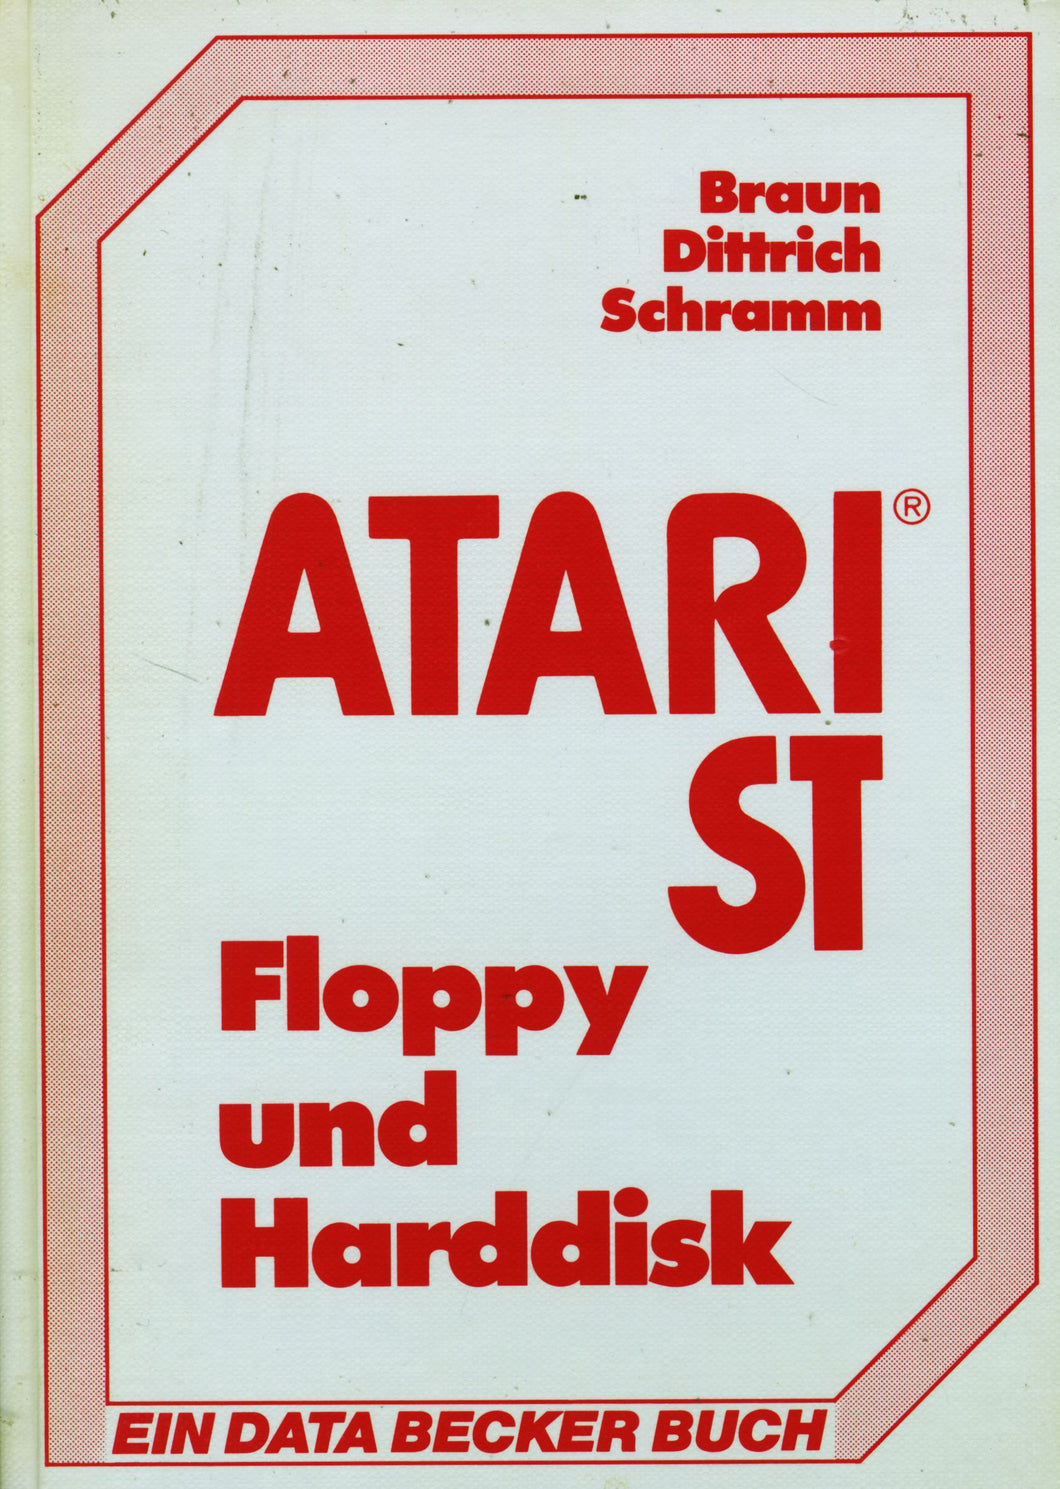 ATARI ST Floppy und Harddisk Vorderseite